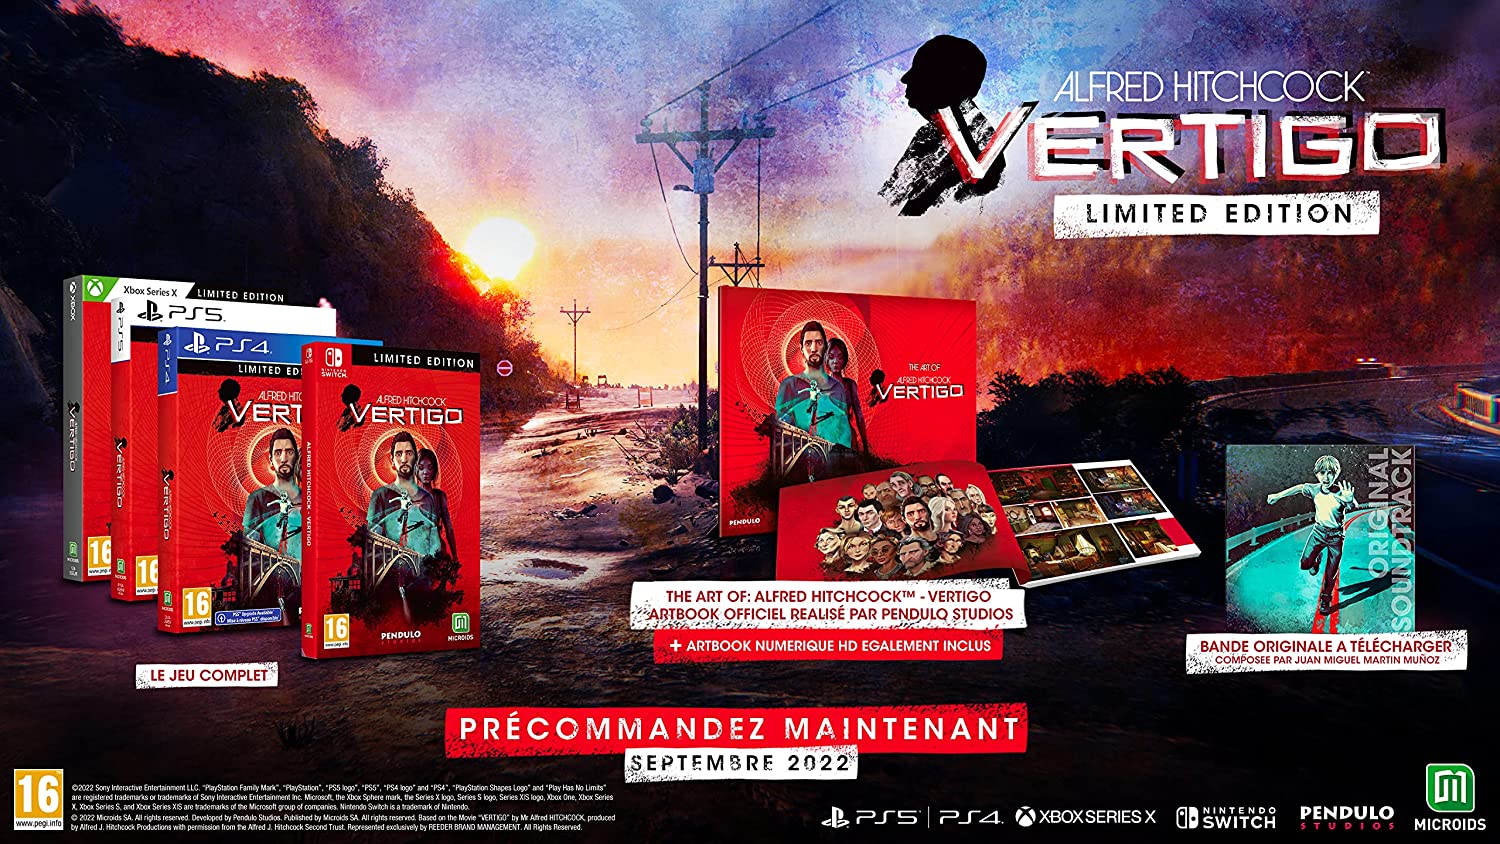 Скриншоты Alfred Hitchcock: Vertigo Limited Edition [Головокружение][Xbox One/Series X, русская версия] интернет-магазин Омегагейм